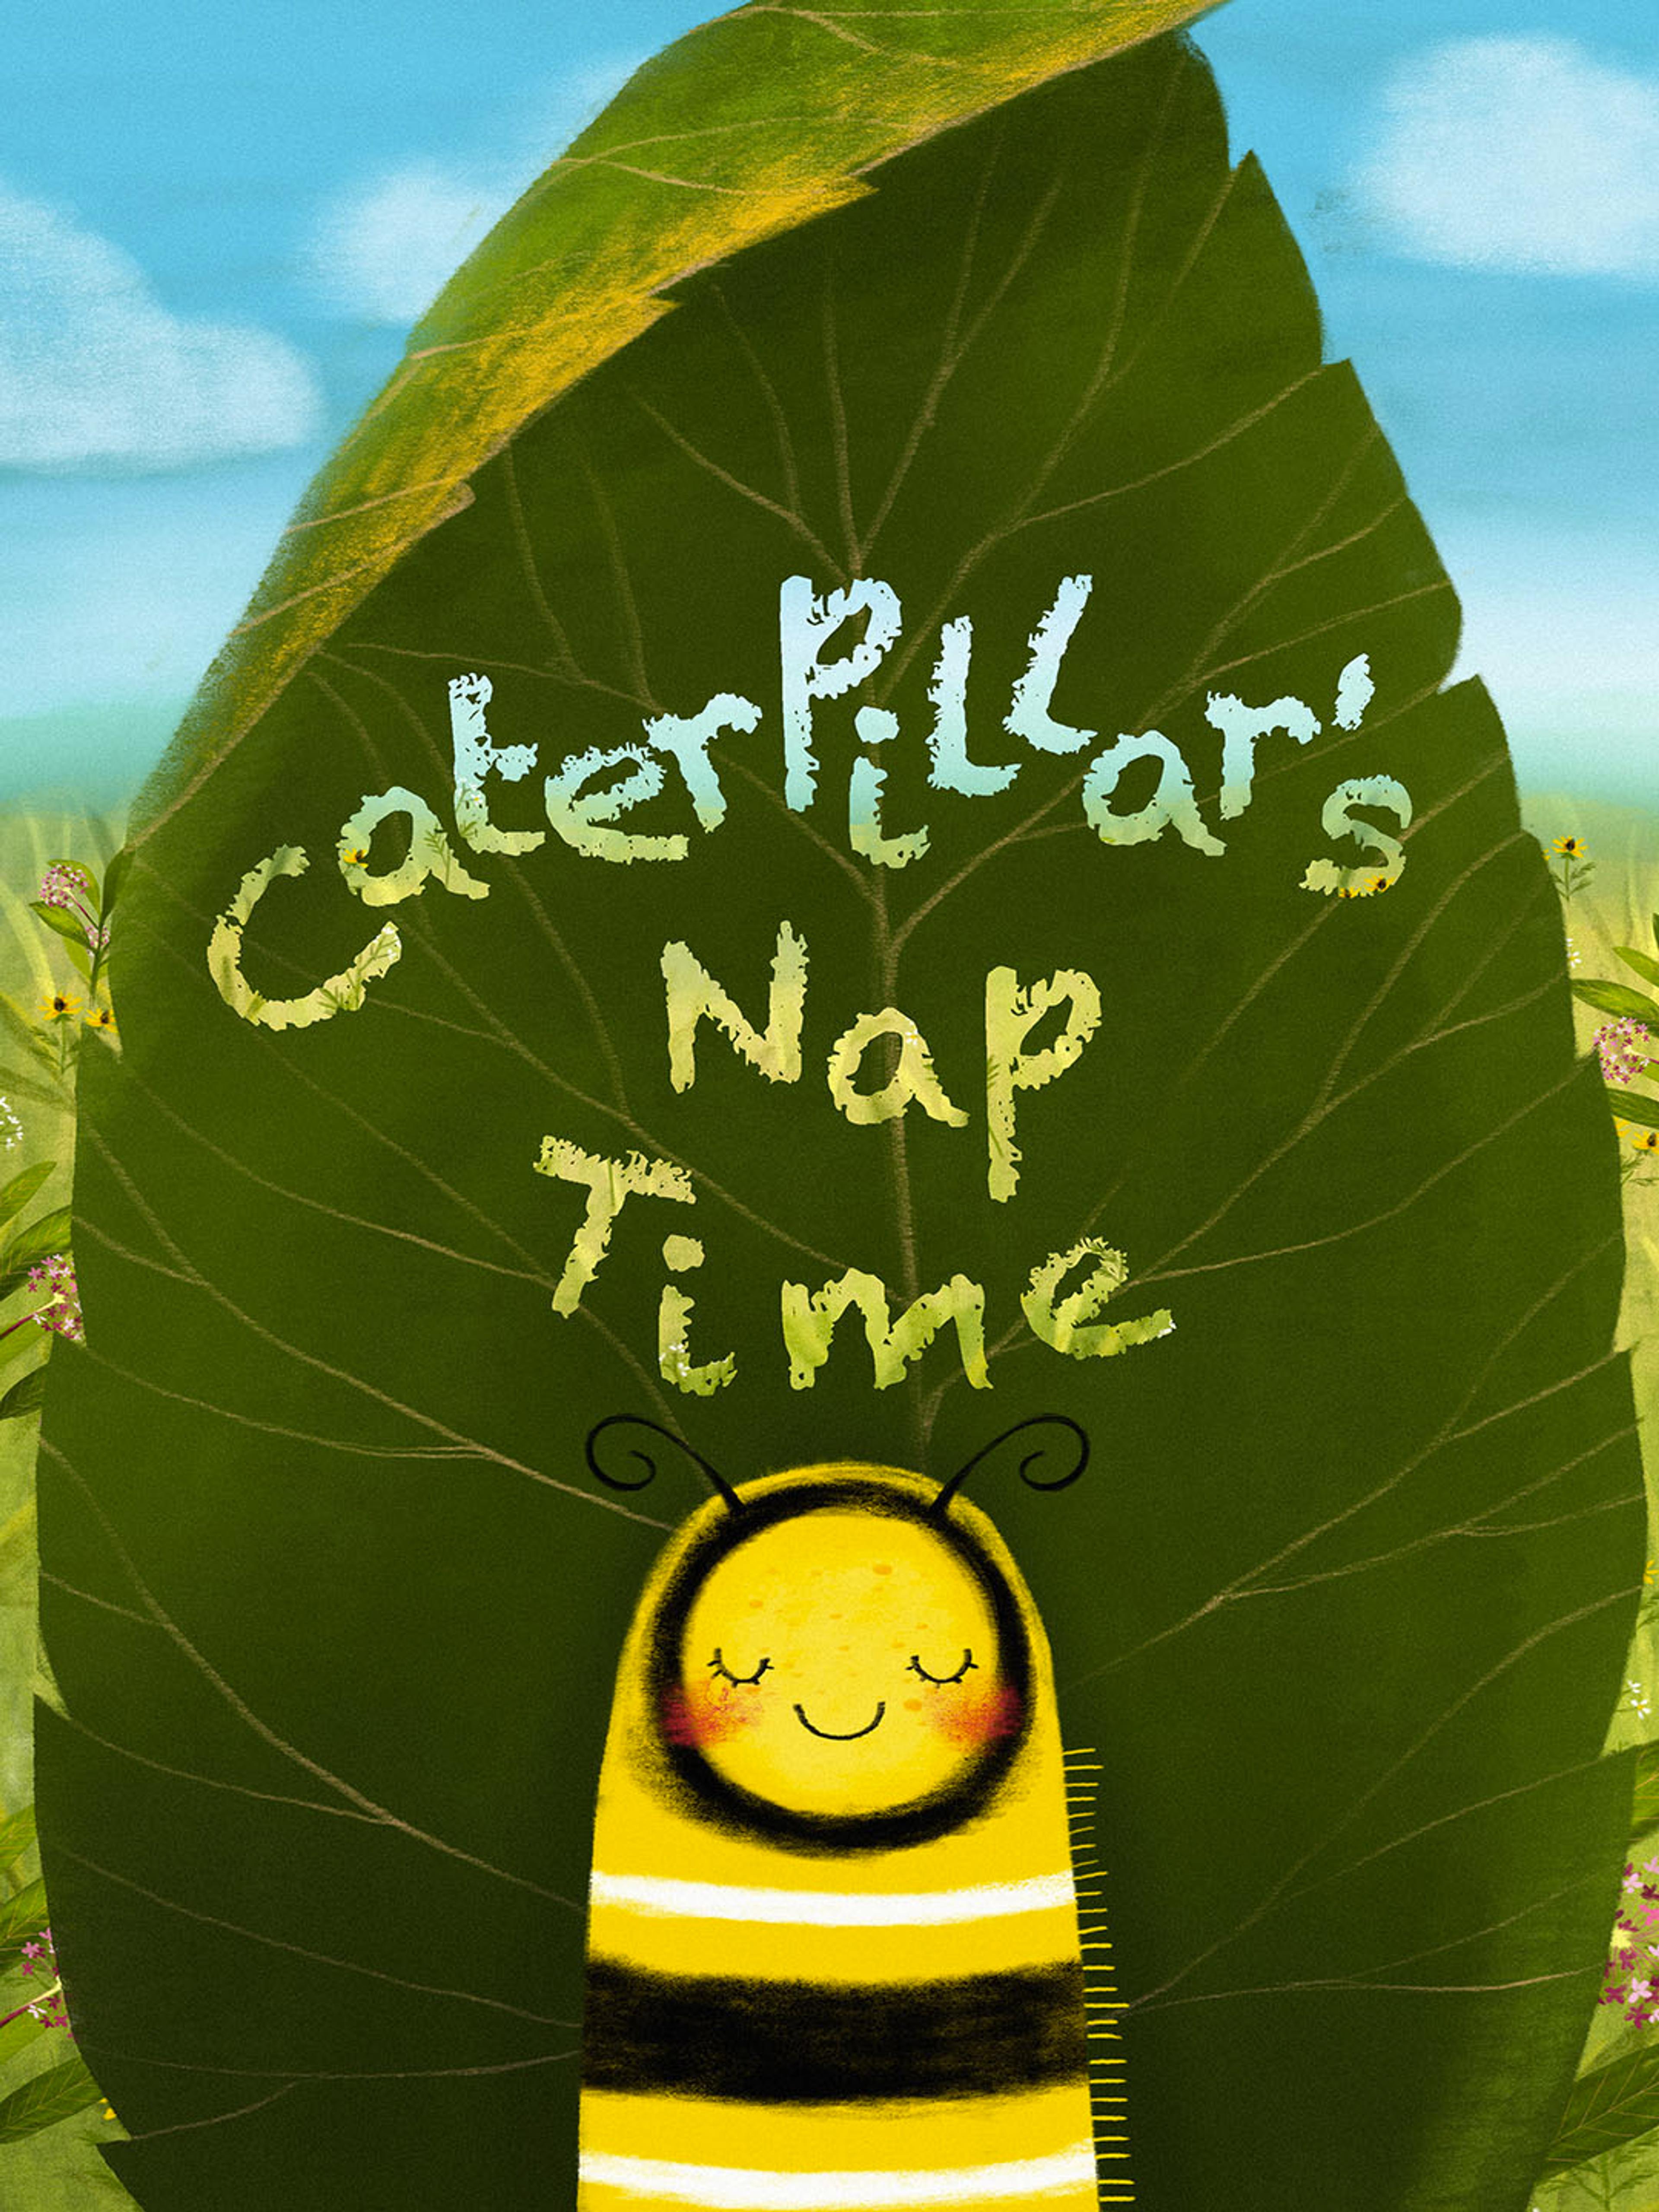 Caterpillar's Nap Time